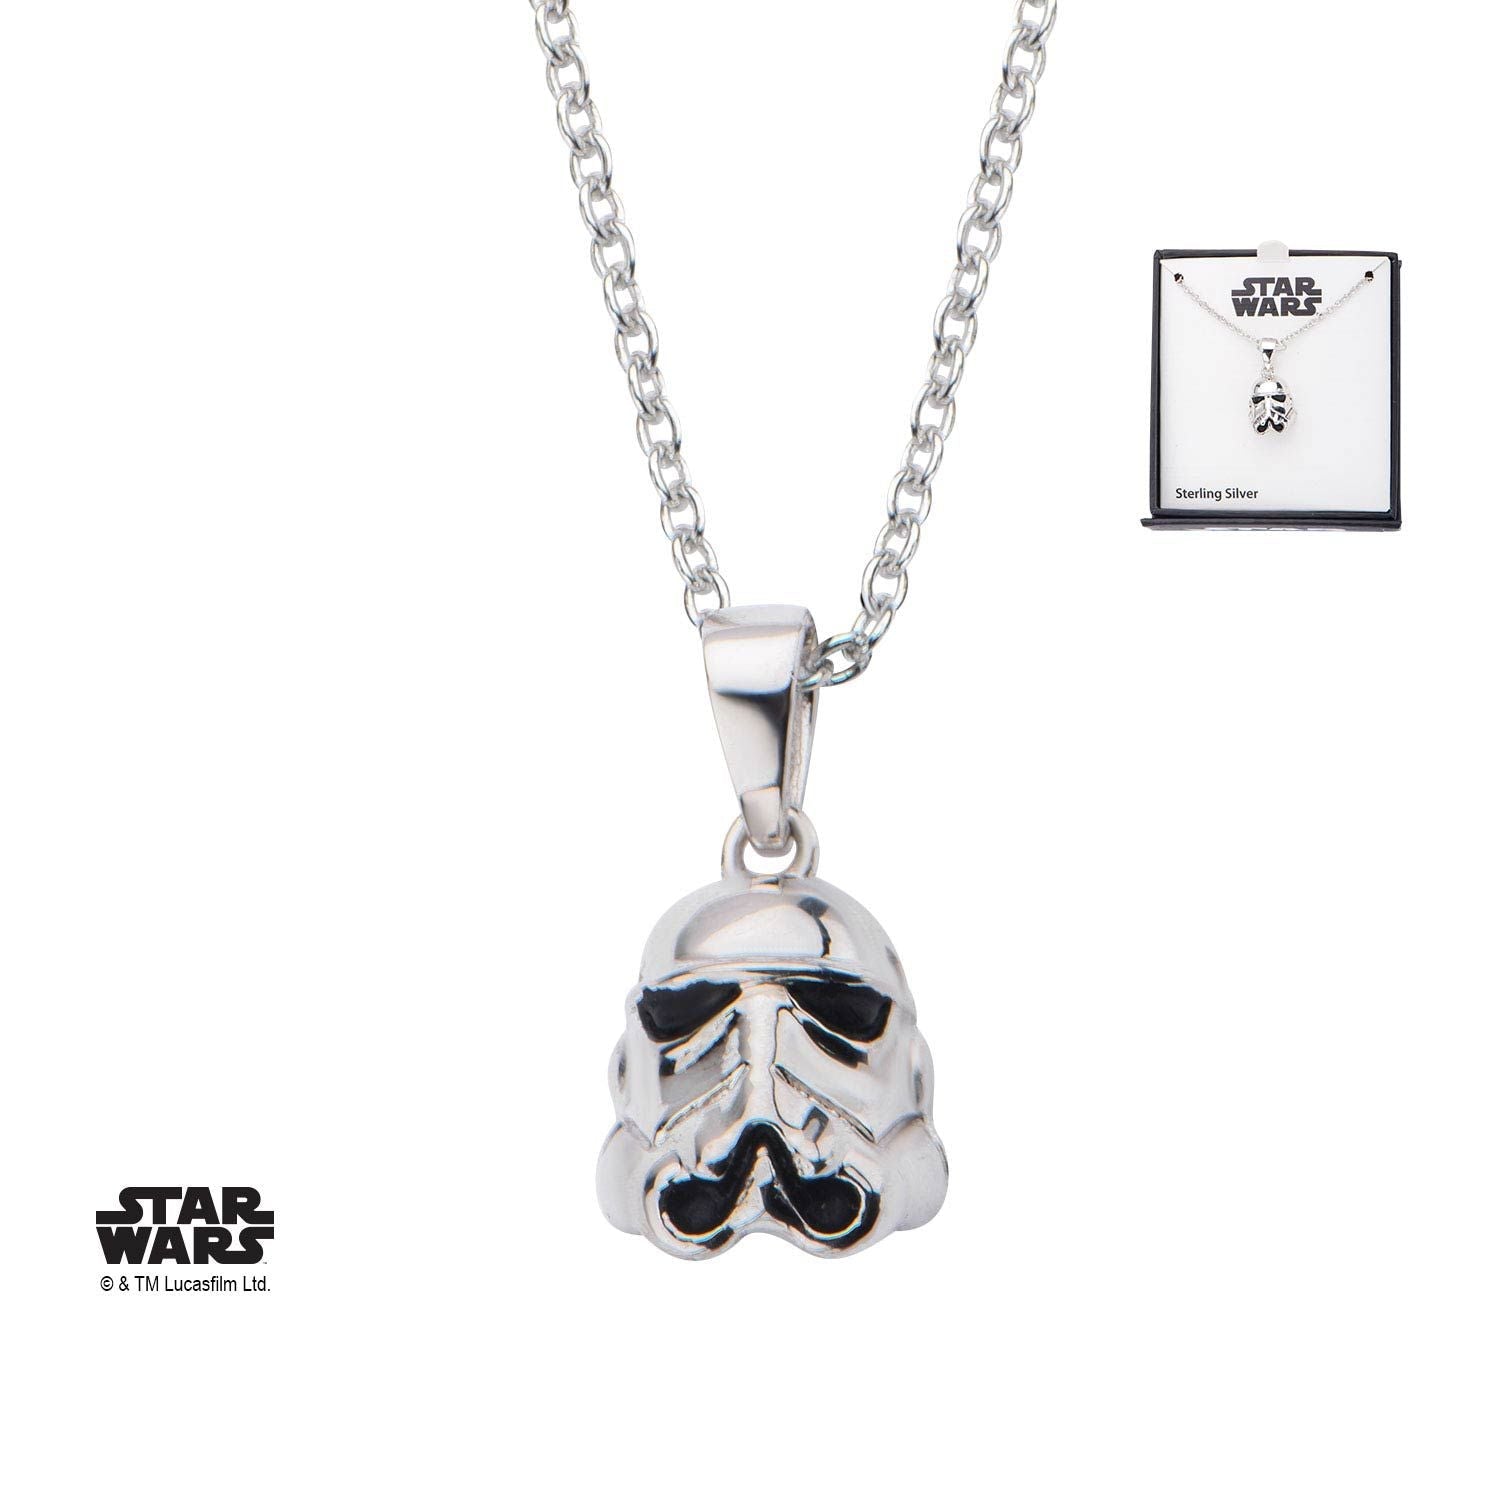 Star Wars 3D Stormtrooper Pendant Necklace, 925 Sterling Silver - Rebel Bod